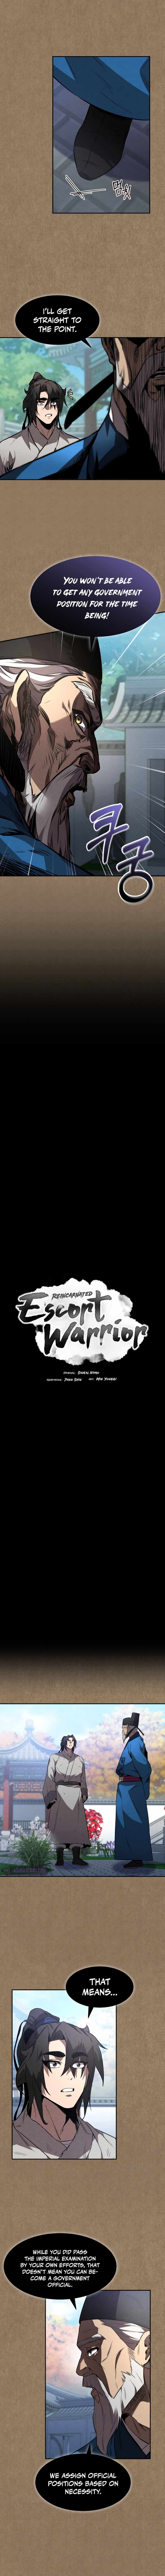 Reincarnated Escort Warrior - Page 2